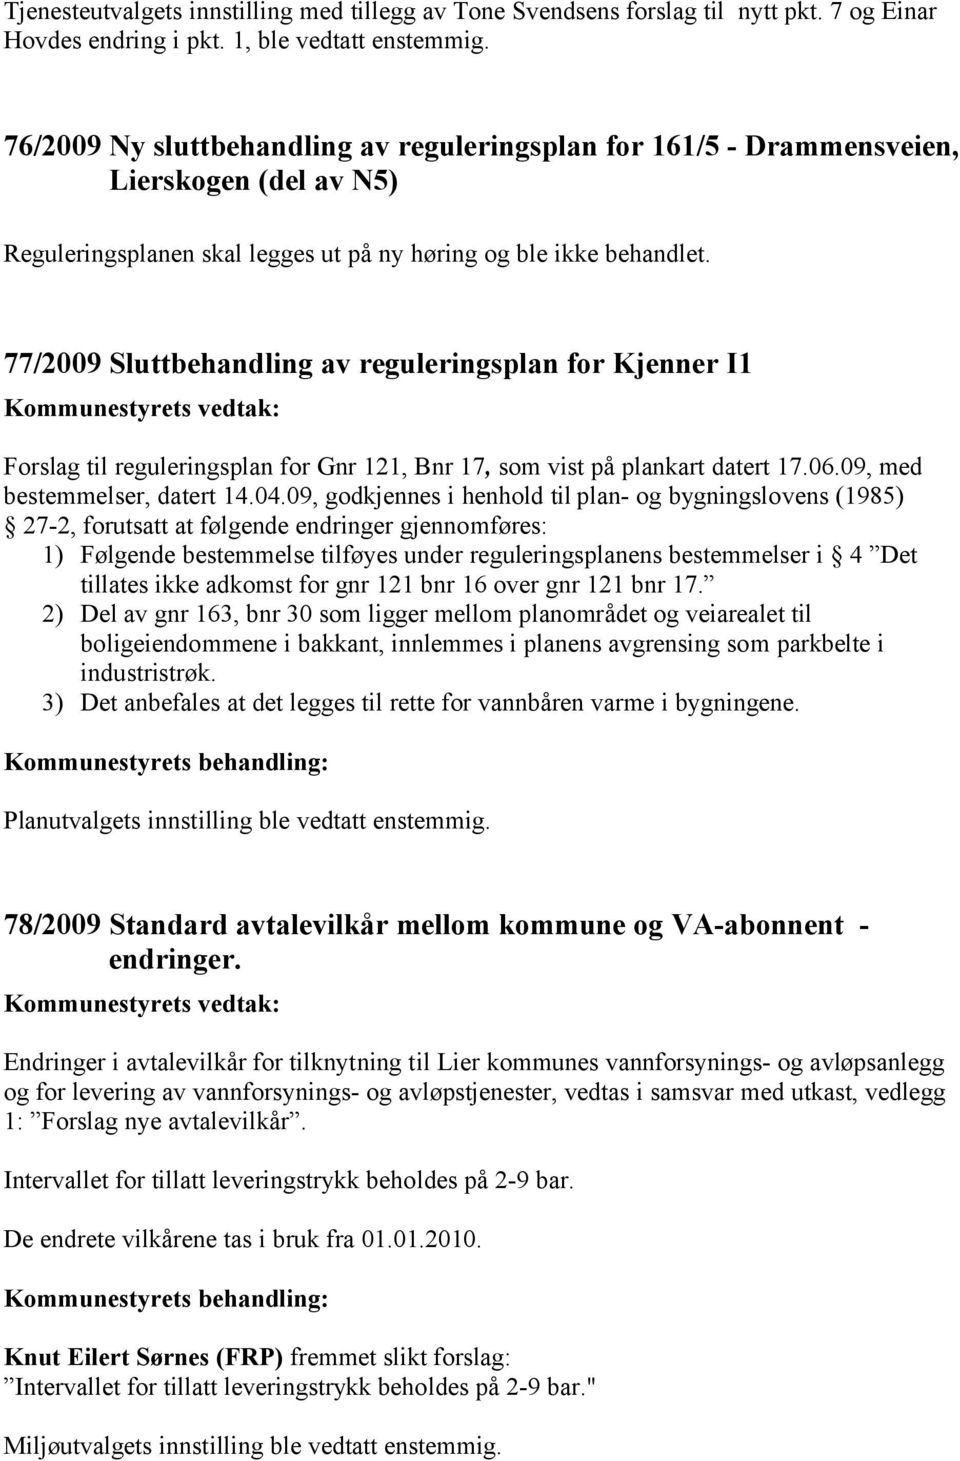 77/2009 Sluttbehandling av reguleringsplan for Kjenner I1 Forslag til reguleringsplan for Gnr 121, Bnr 17, som vist på plankart datert 17.06.09, med bestemmelser, datert 14.04.